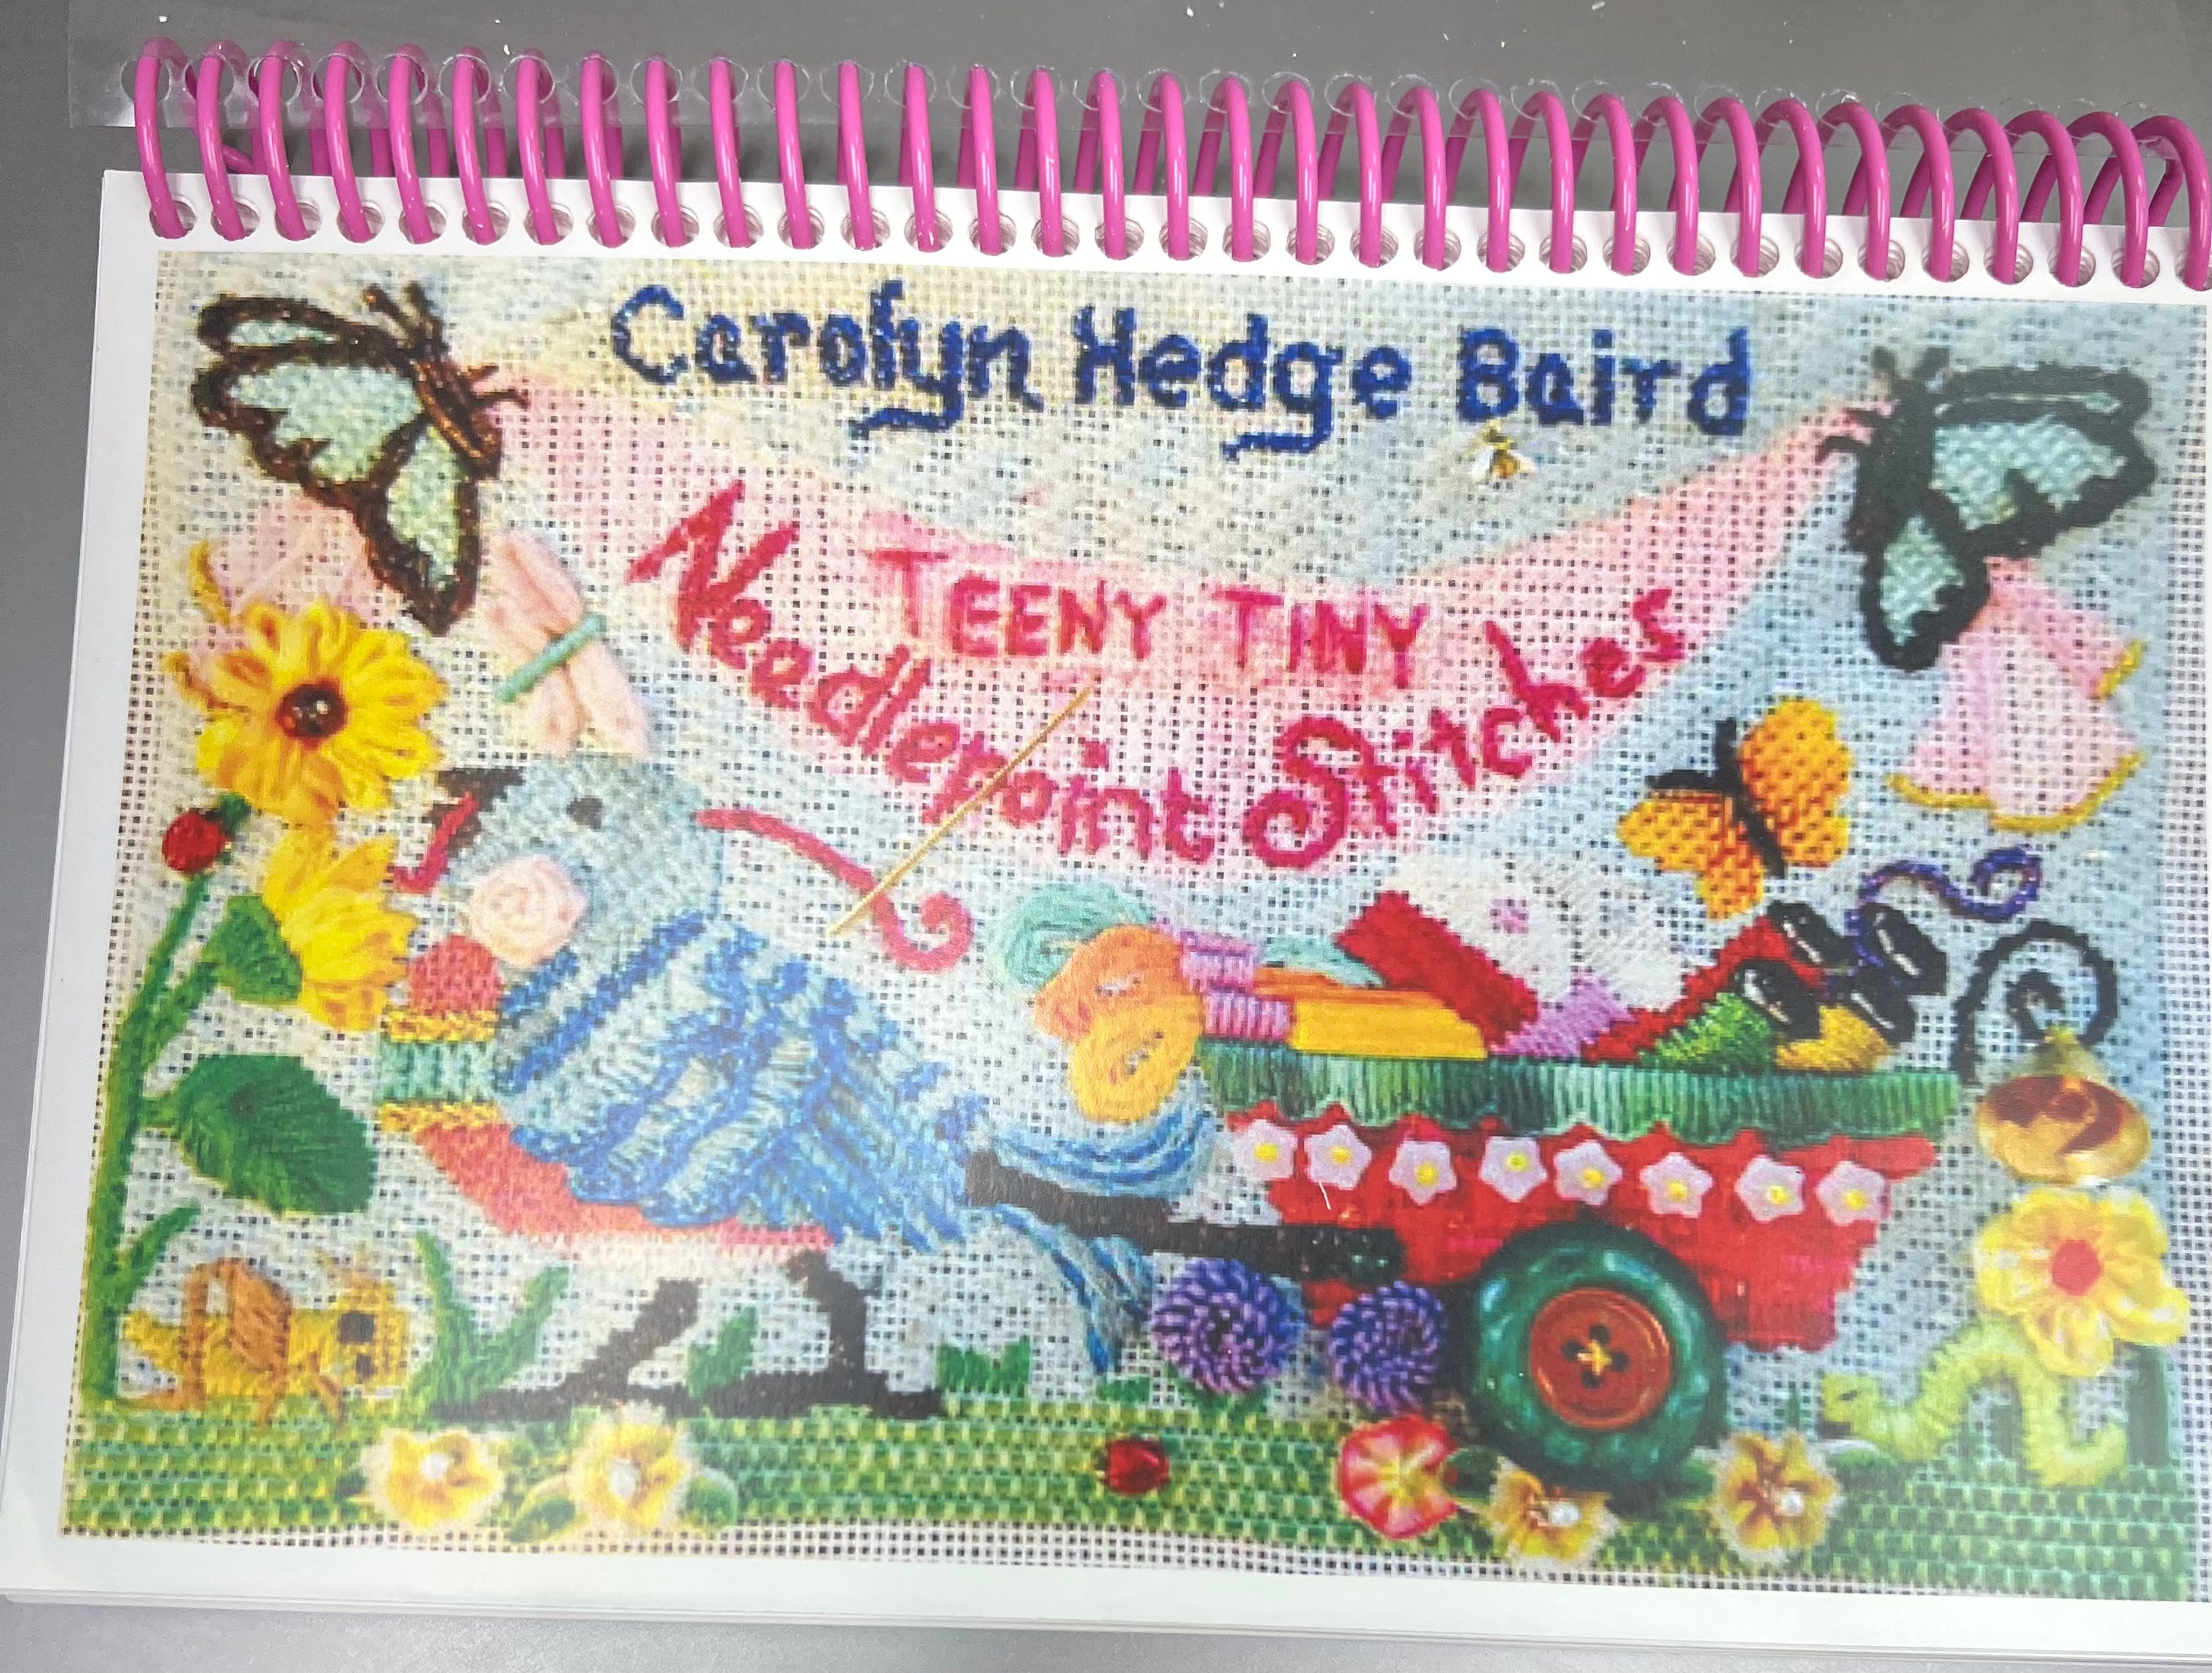 Teeny Tiny Needlepoint Stitches  by Carolyn Hedge Baird